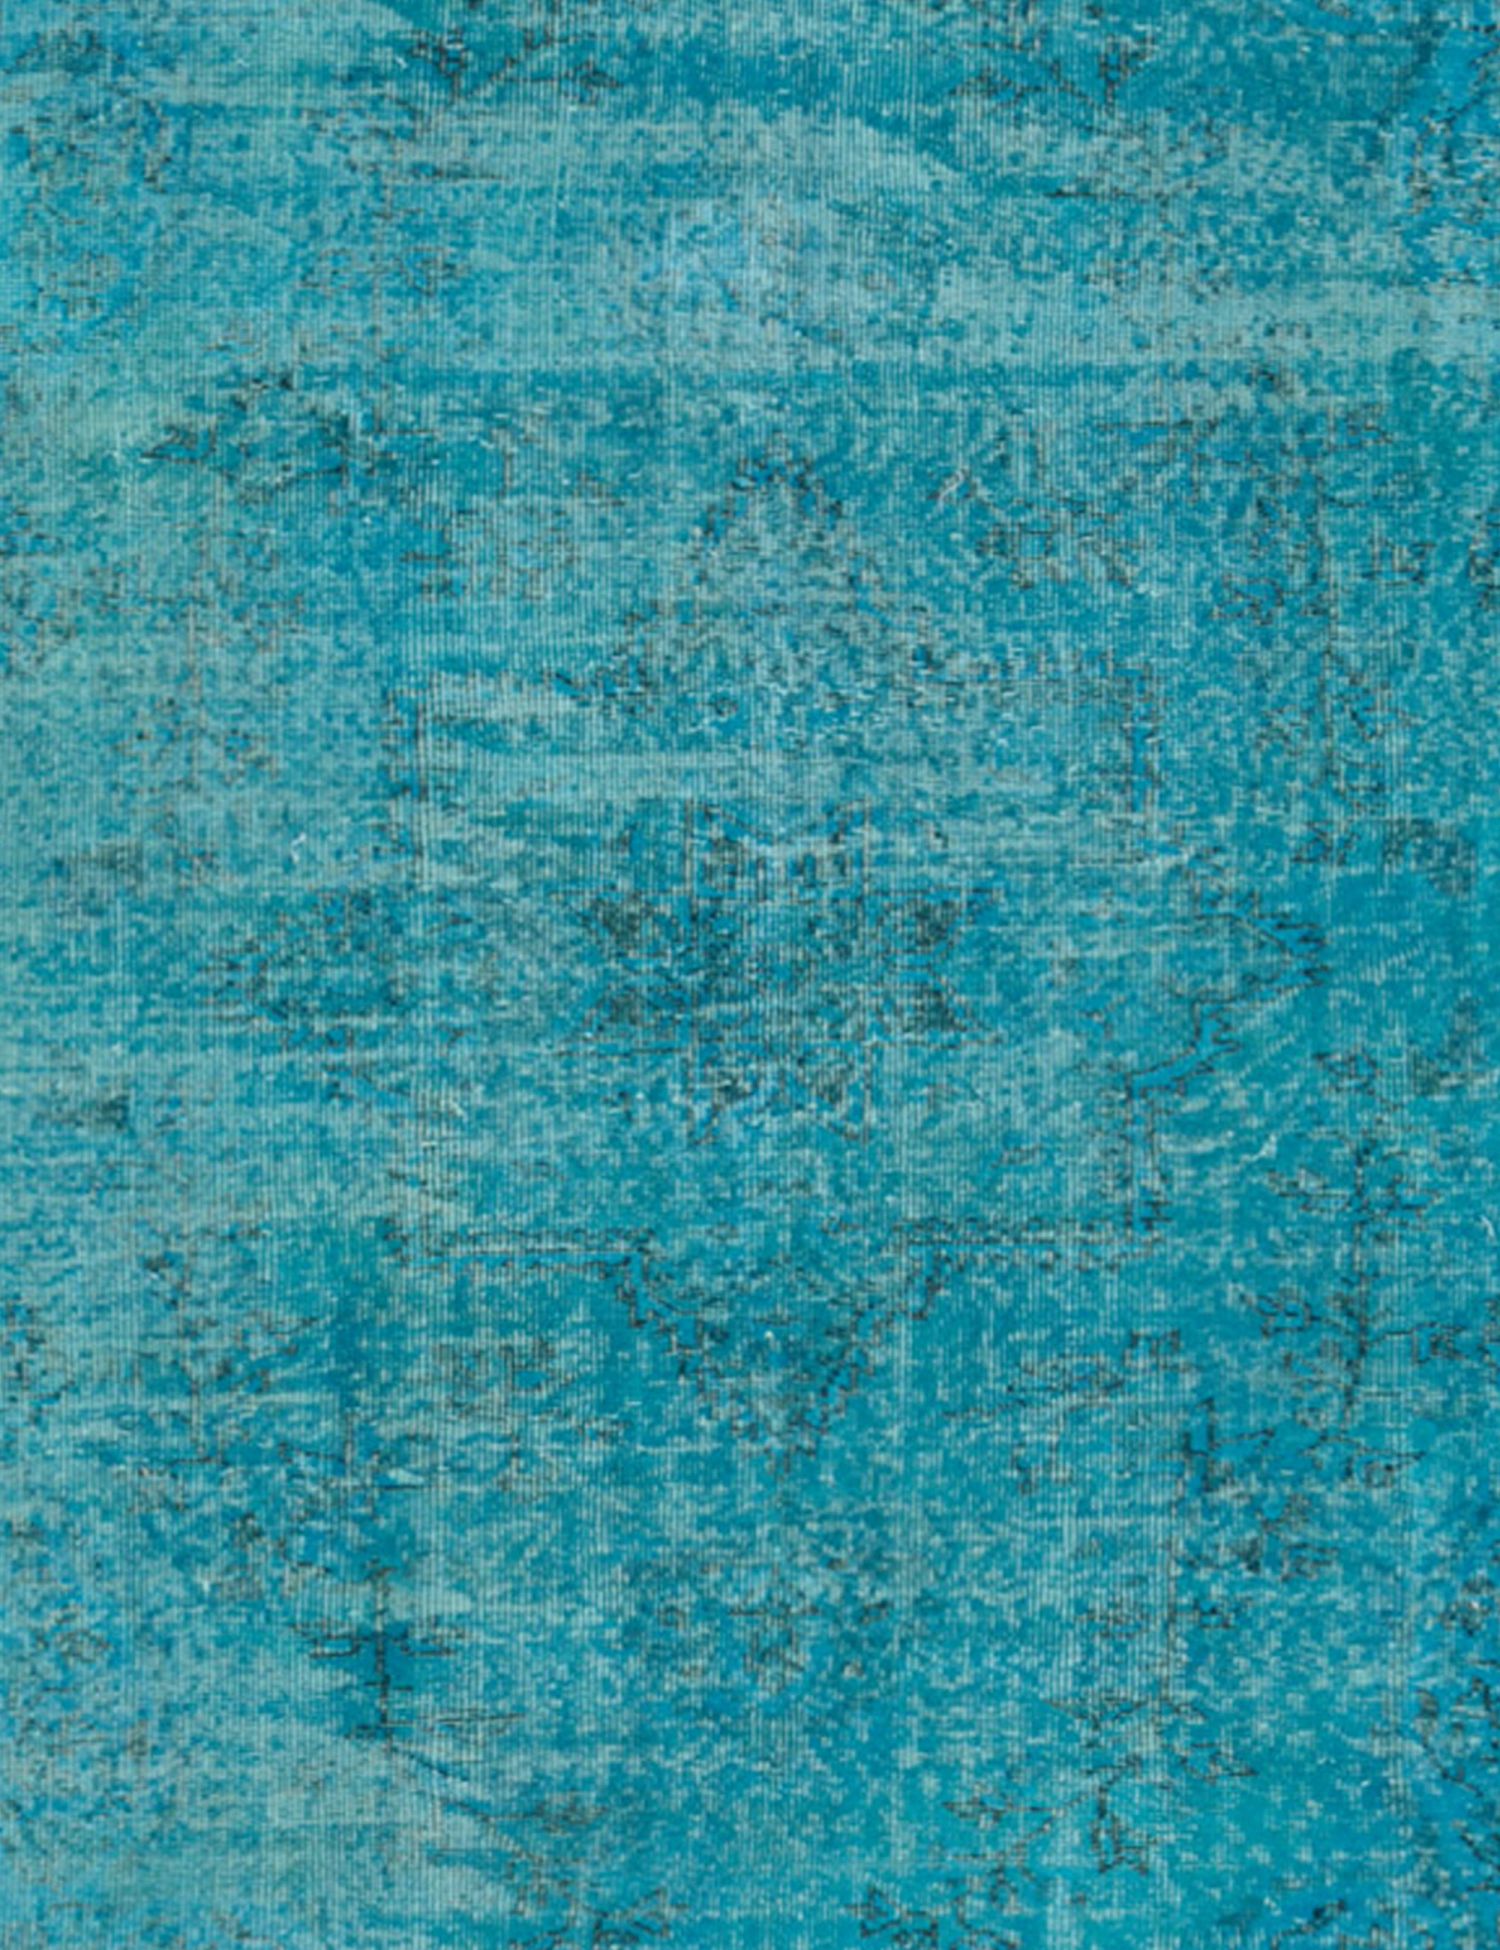 Vintage Teppich  blau <br/>190 x 190 cm